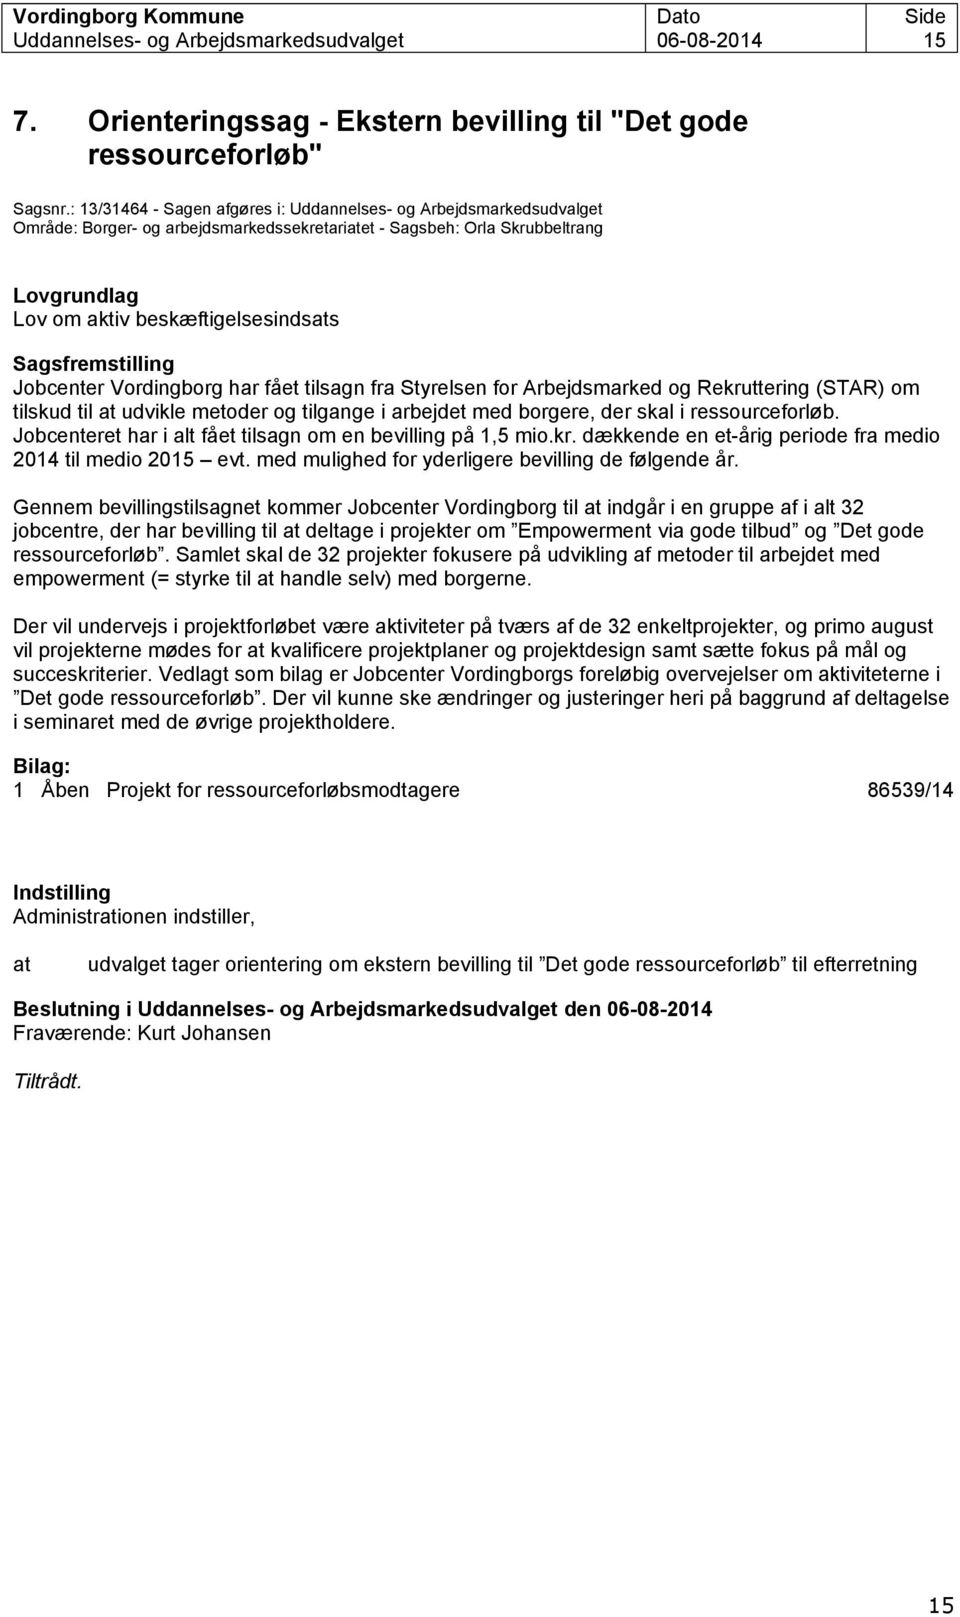 Sagsfremstilling Jobcenter Vordingborg har fået tilsagn fra Styrelsen for Arbejdsmarked og Rekruttering (STAR) om tilskud til at udvikle metoder og tilgange i arbejdet med borgere, der skal i